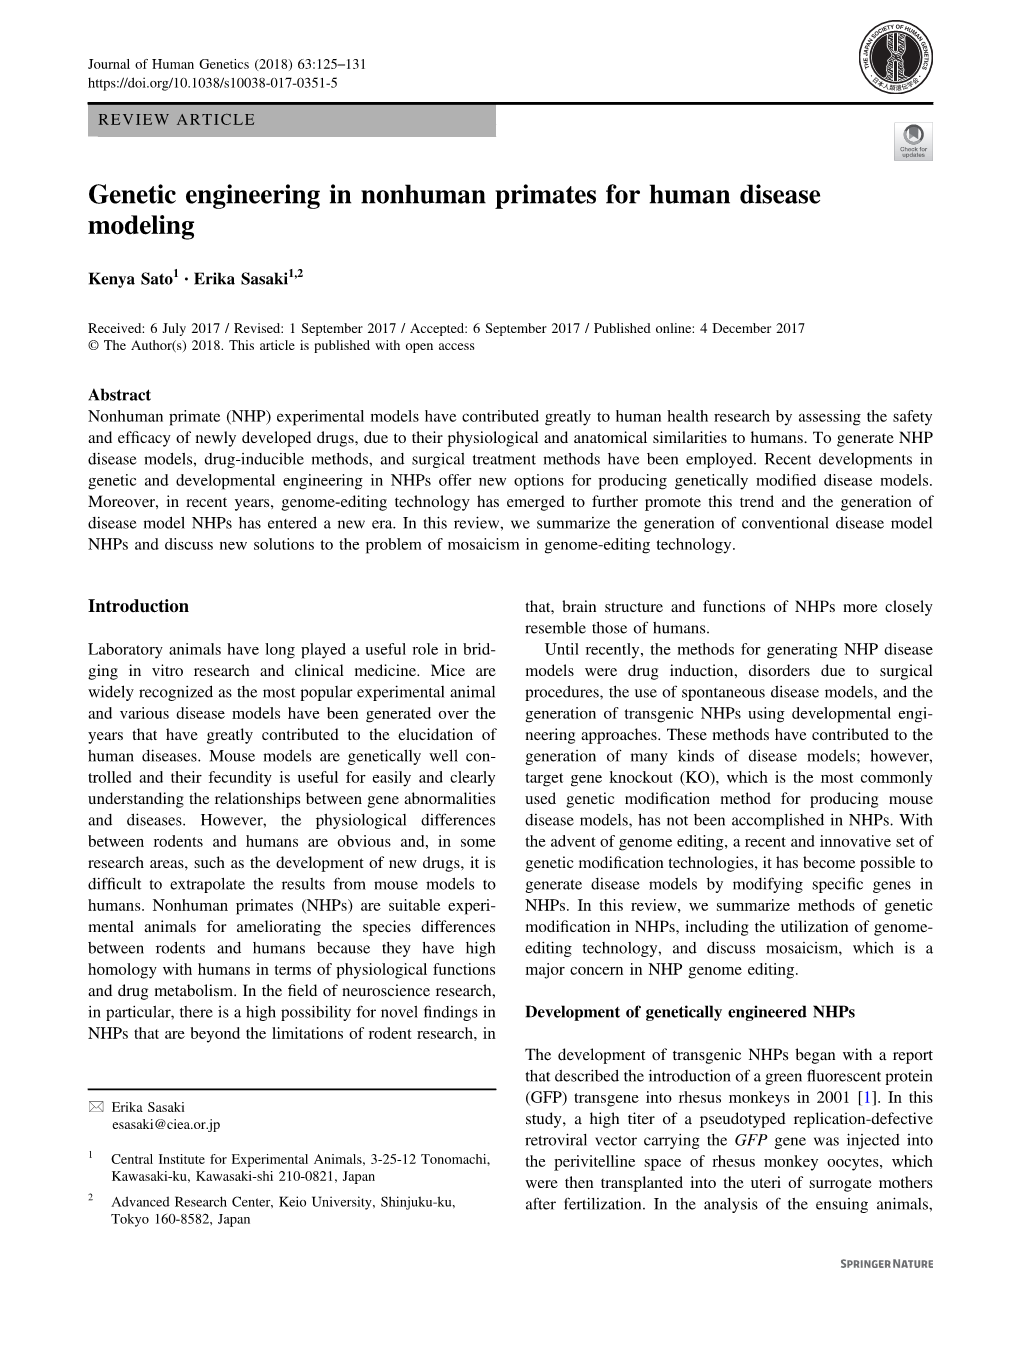 Genetic Engineering in Nonhuman Primates for Human Disease Modeling